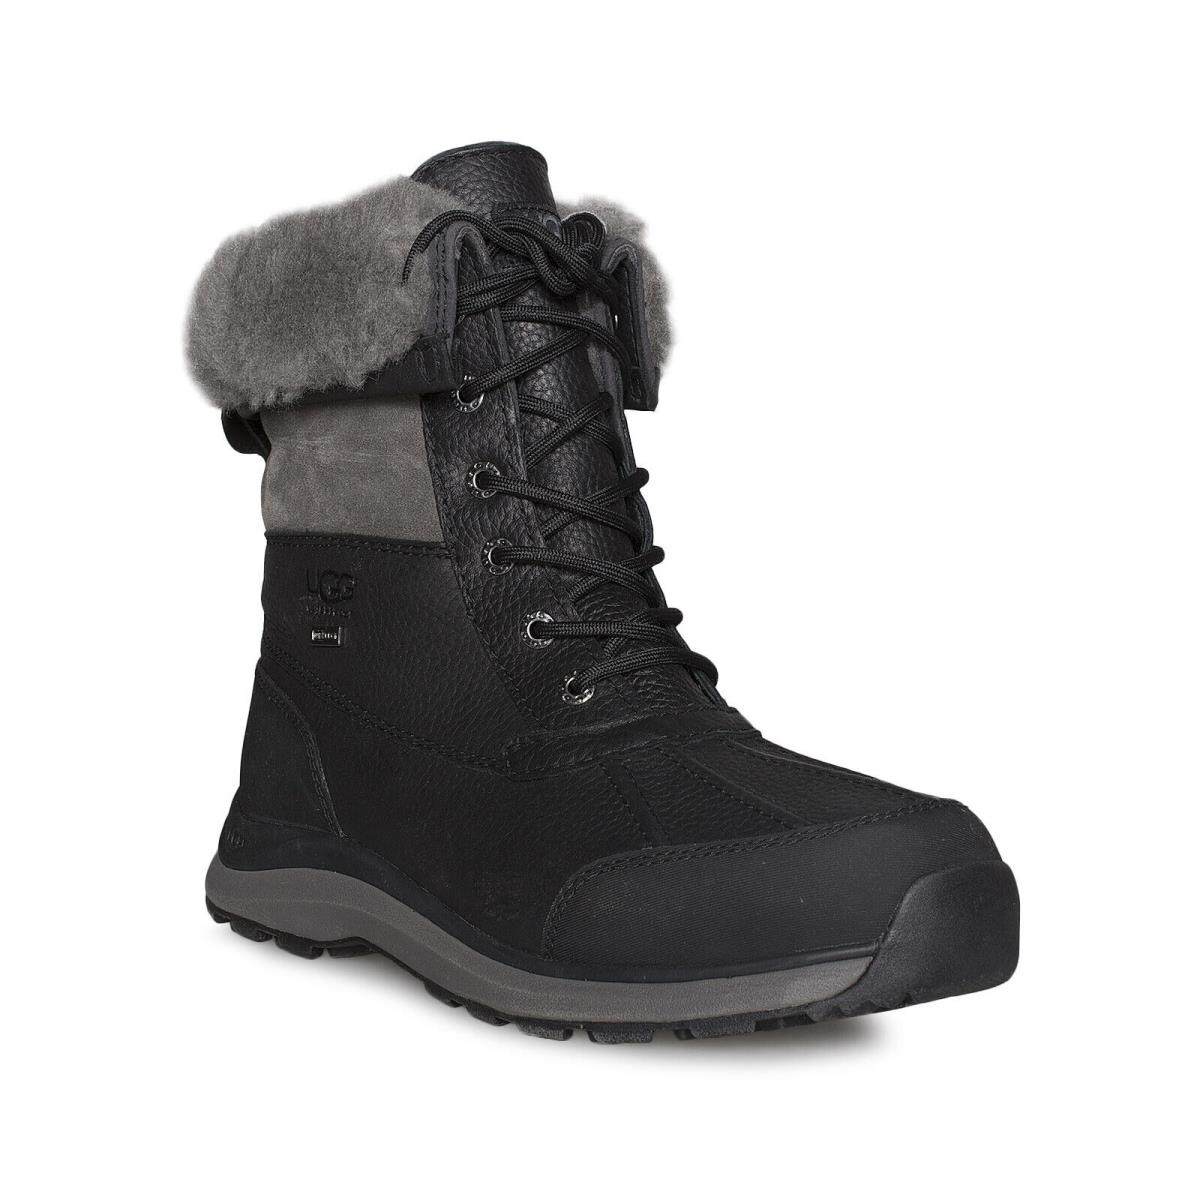 Ugg Adirondack Iii Black Waterproof Sheepskin Women`s Boots Size US 6/UK 4